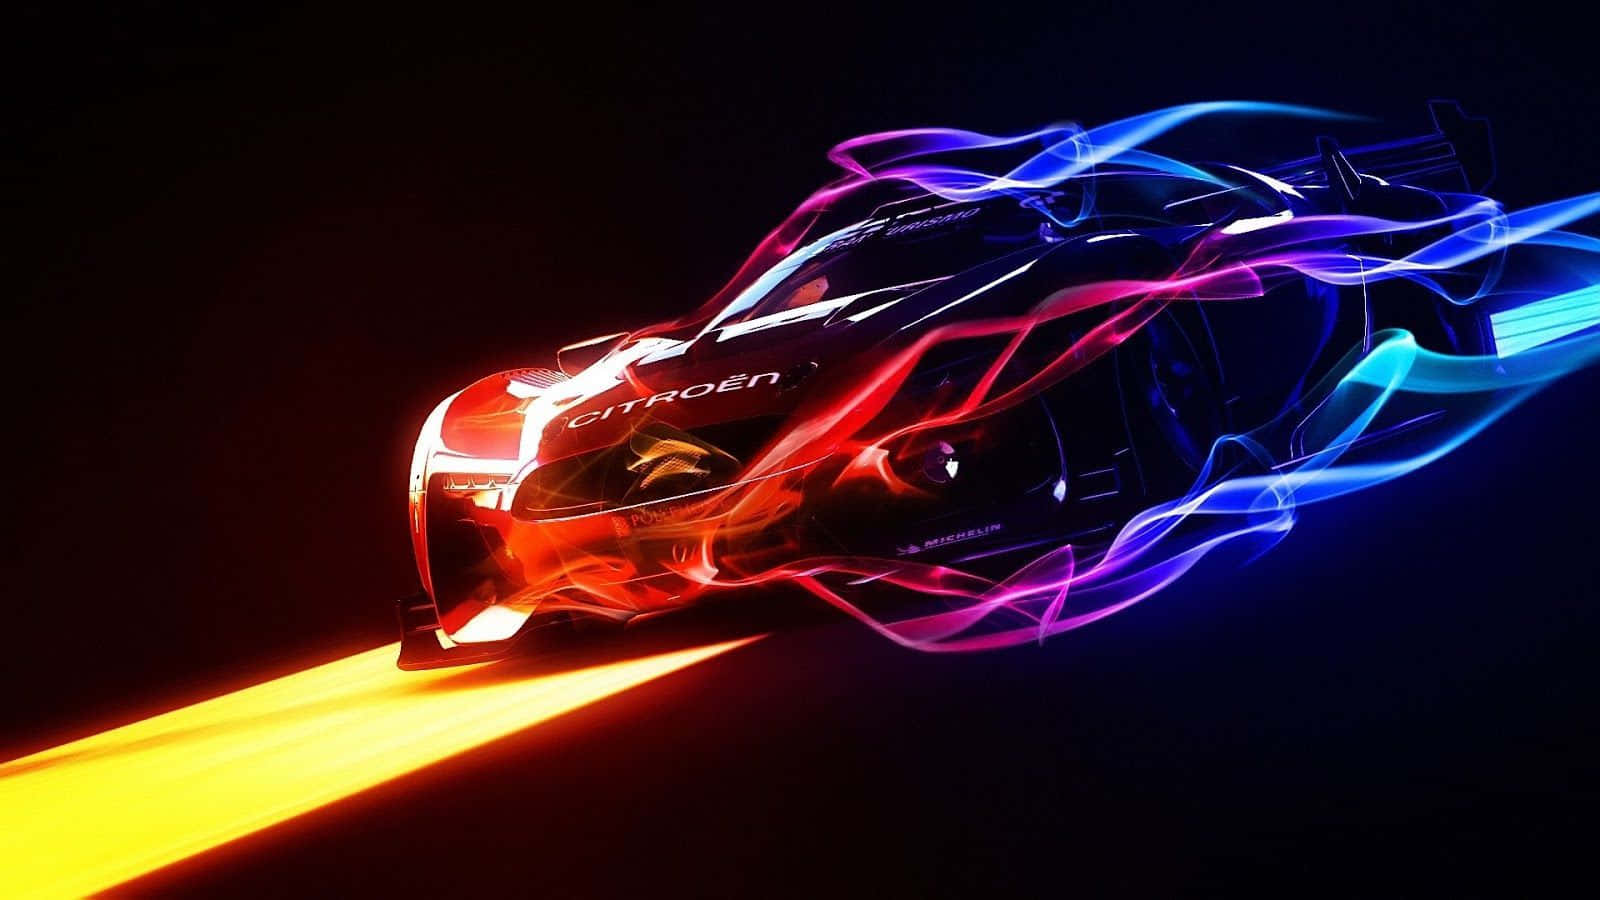 Bestescomputerhintergrundbild: Citroen Gt Auto In Neonlichtern